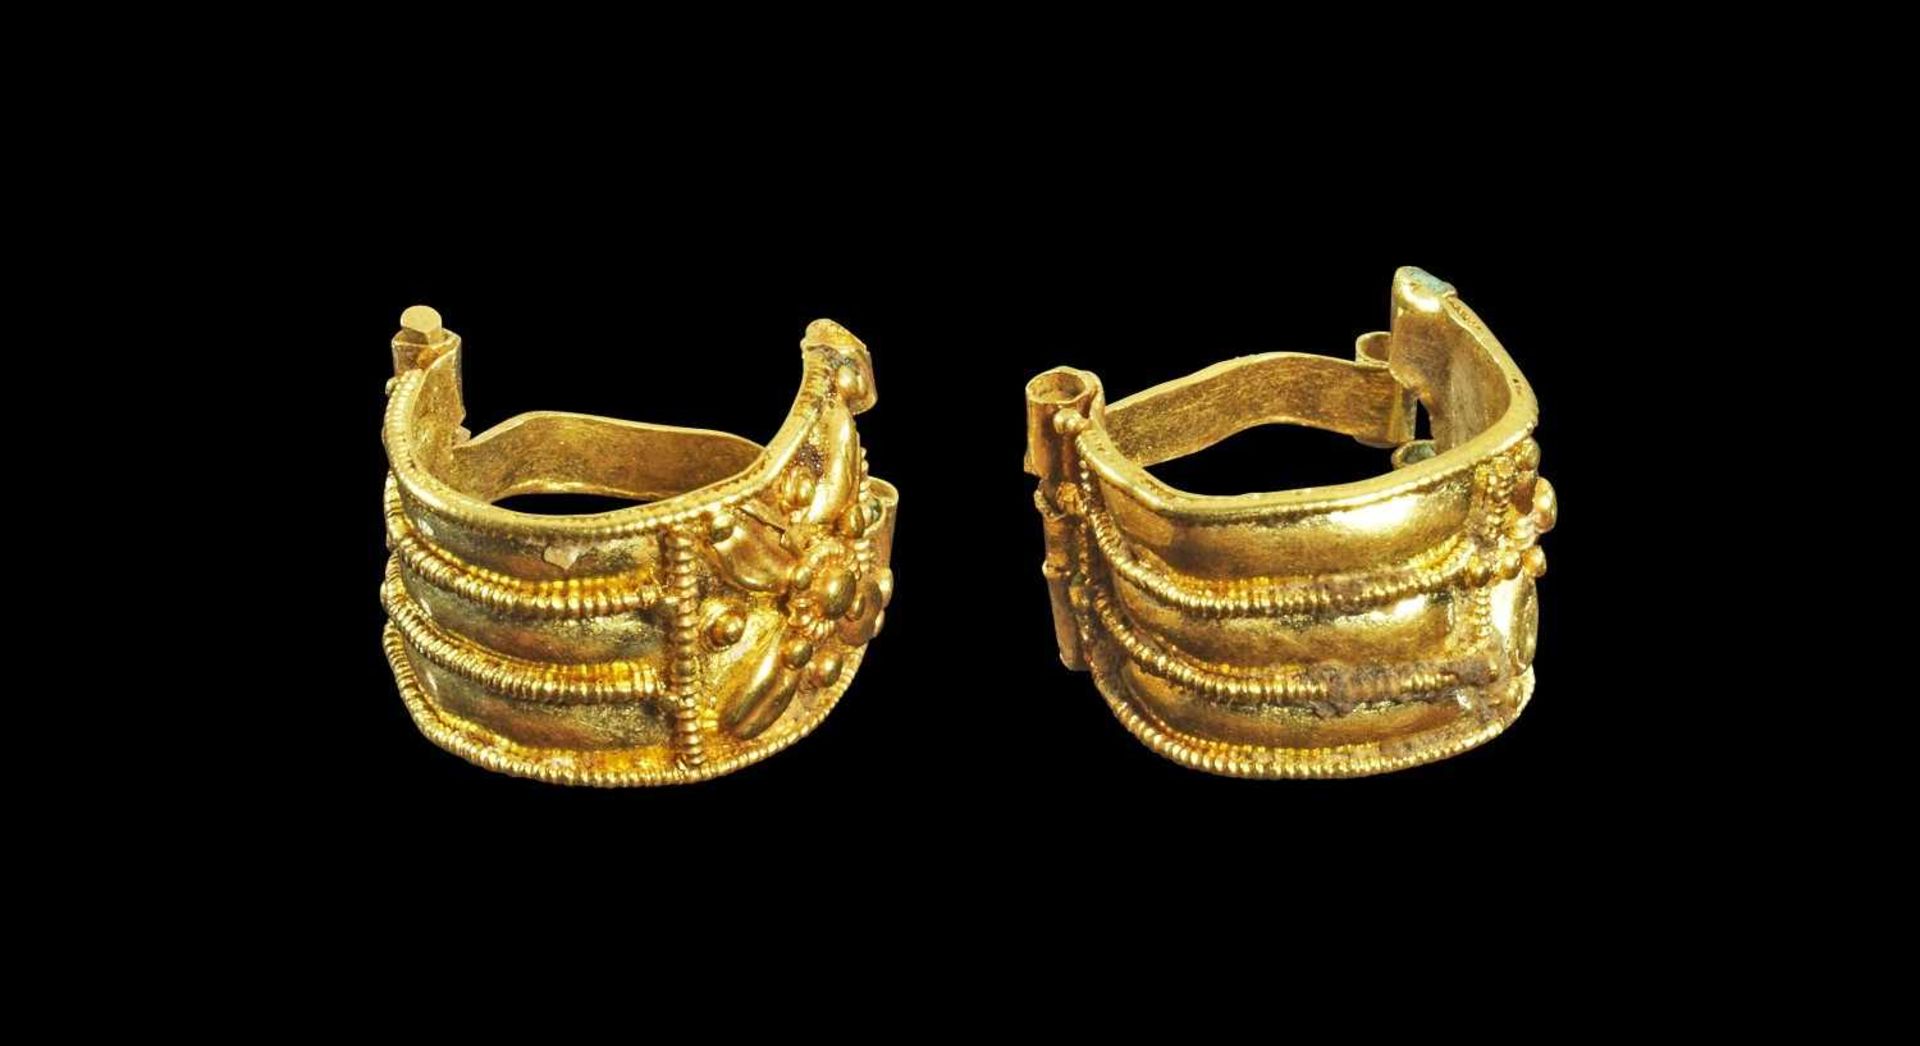 Paar goldene Körbchenohrringe. Etruskisch, 7. Jh. - 5. Jh. v. Chr. 1,78g, ø 1cm. Typ 'Bauletto'. Ein